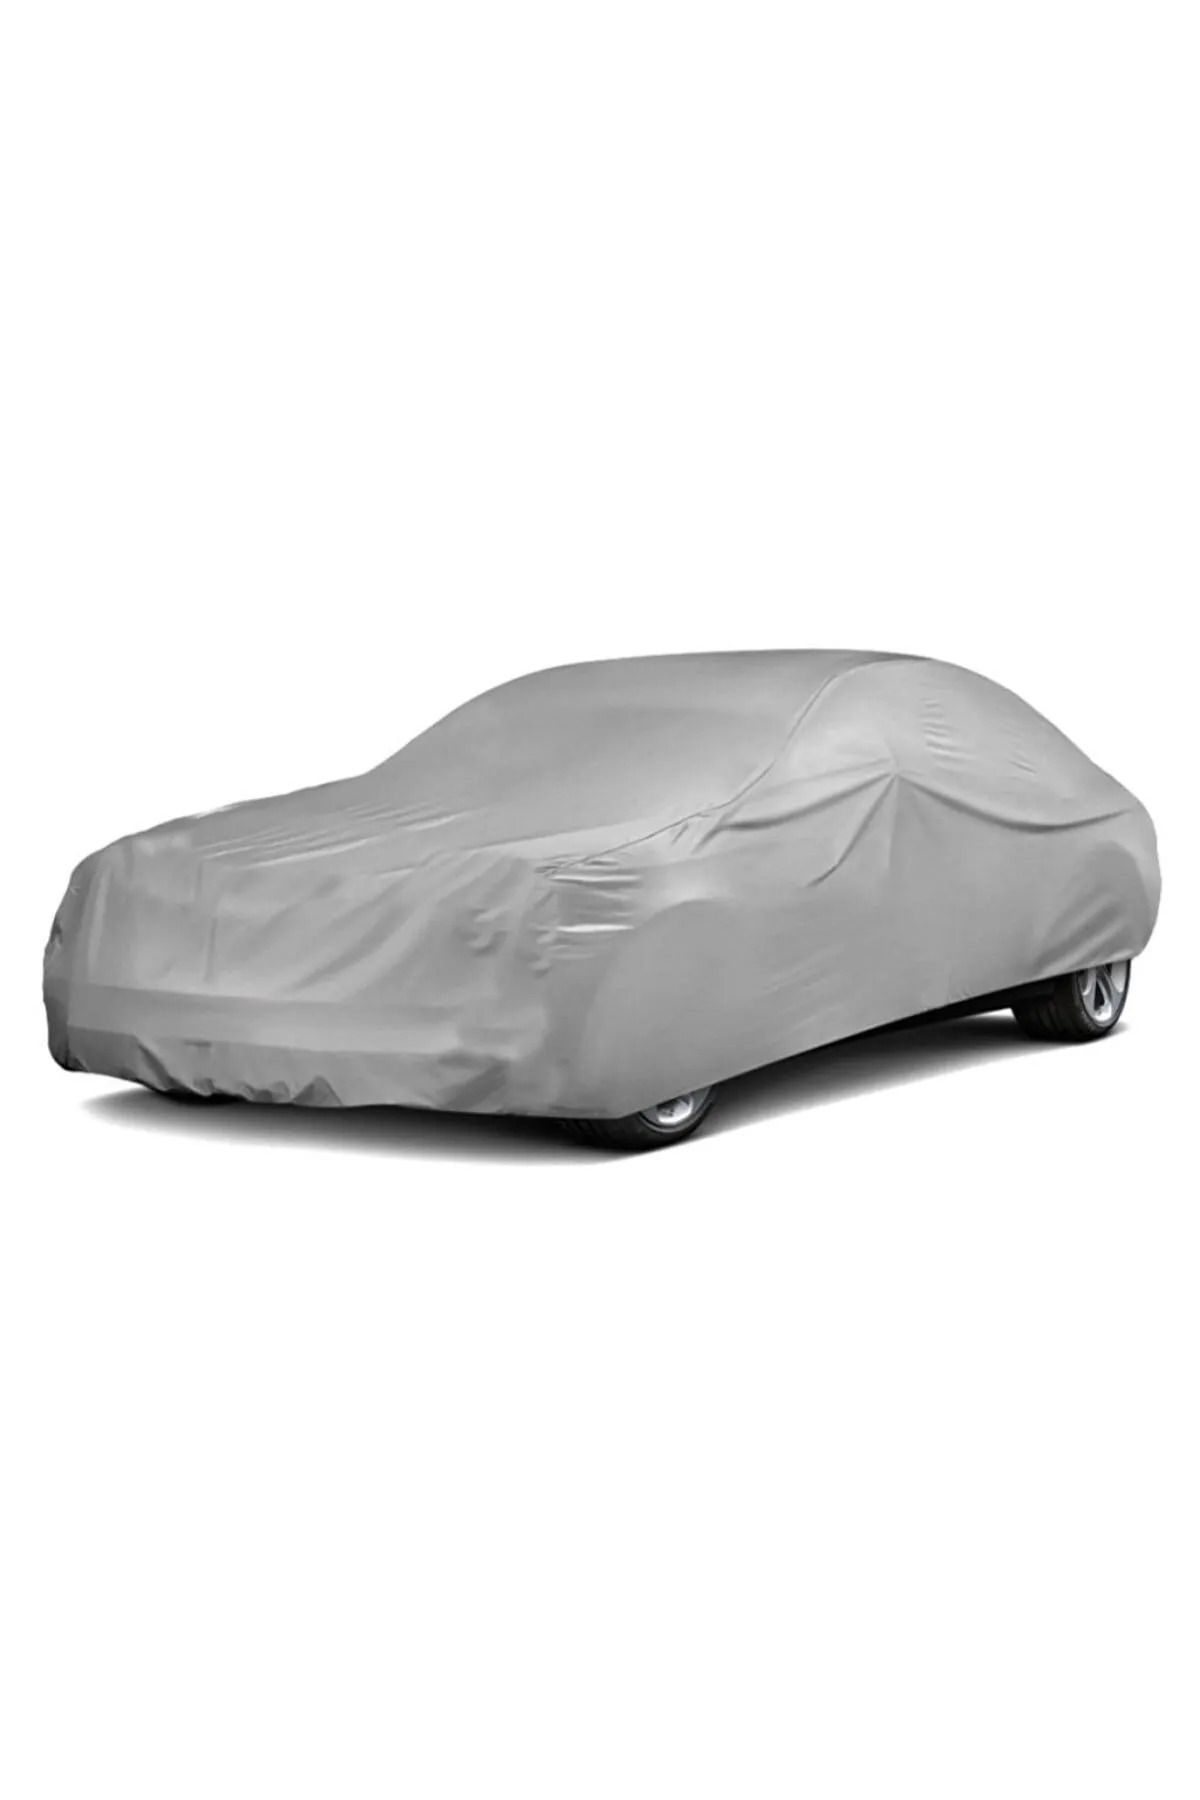 PlusOto Honda Cr-Z Compatible Auto Tarpaulin, Vehicle Cover, Tent